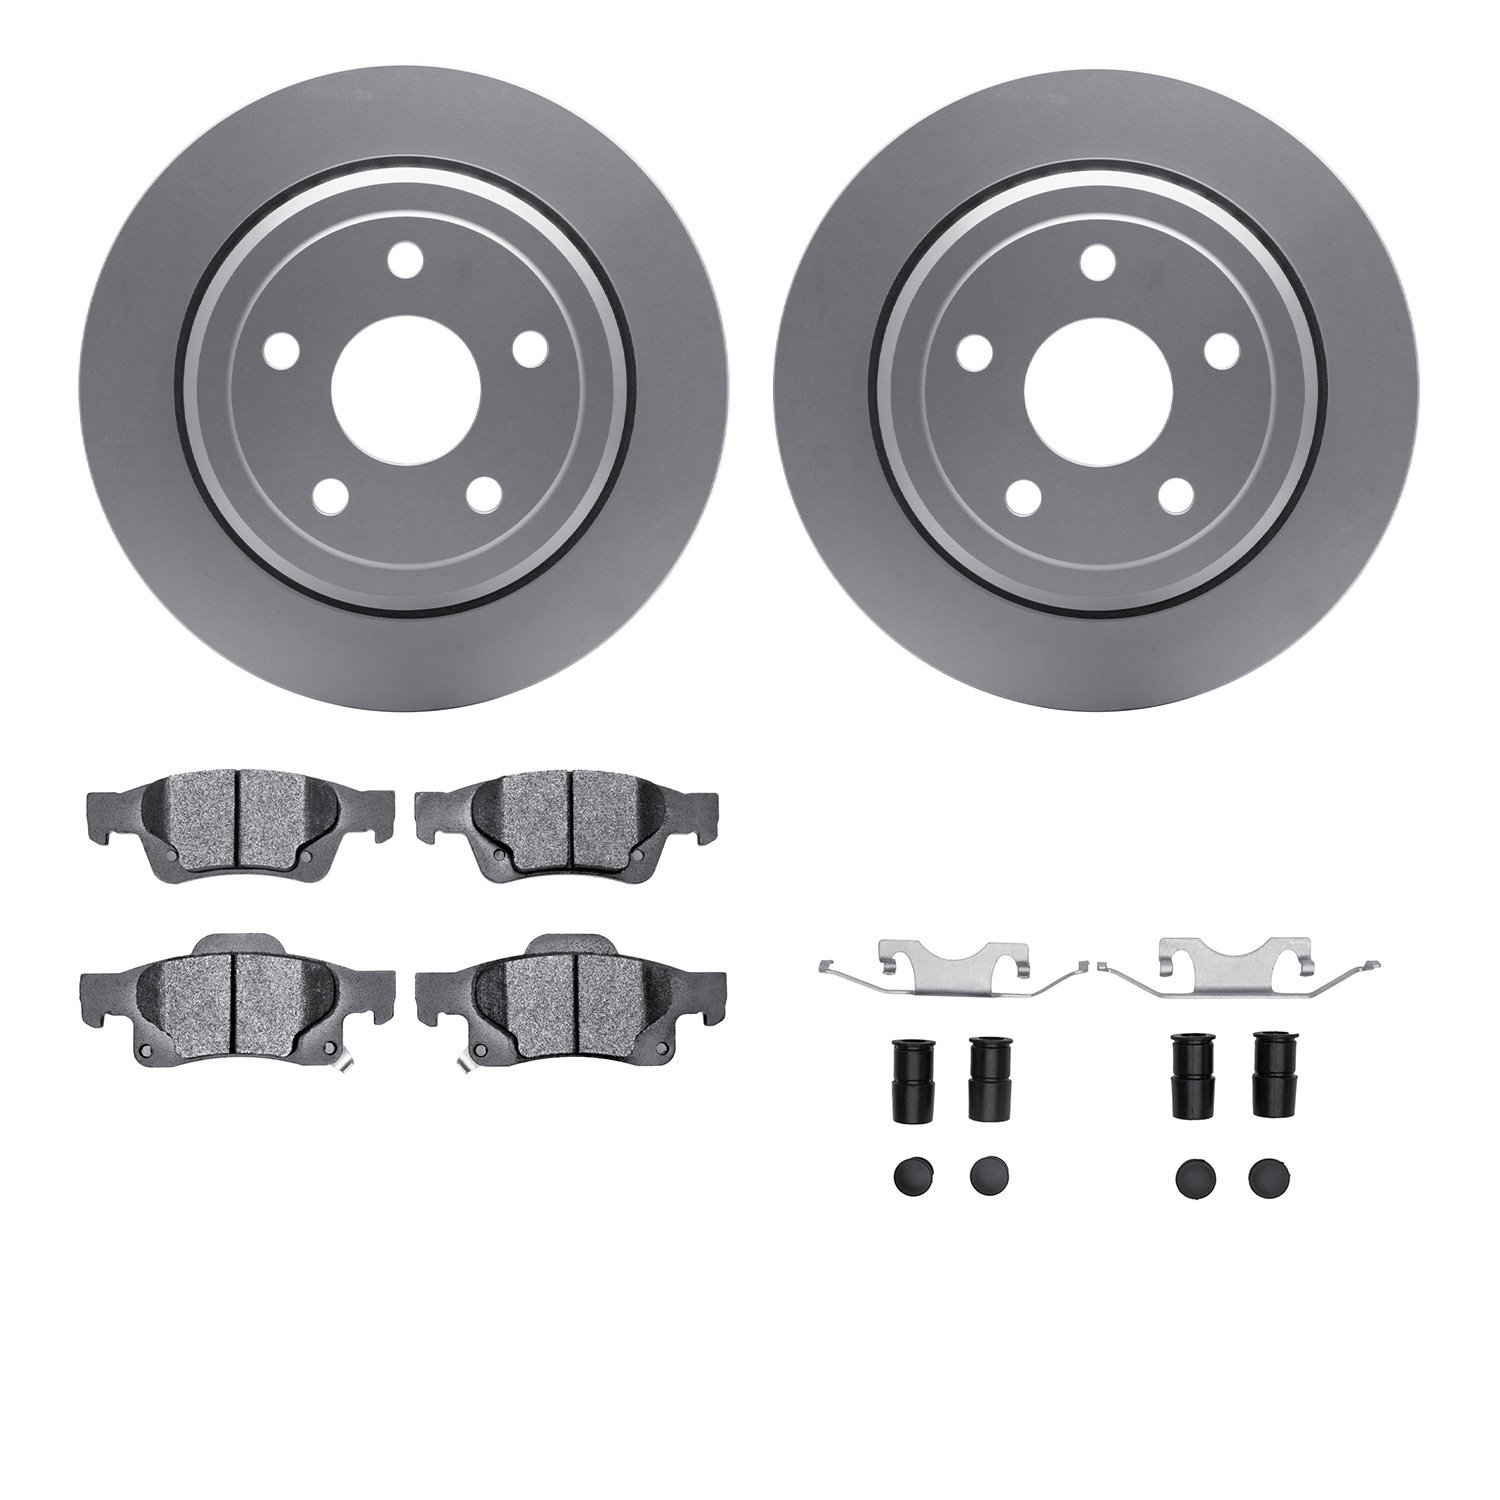 4212-42003 Geospec Brake Rotors w/Heavy-Duty Brake Pads & Hardware, Fits Select Mopar, Position: Rear